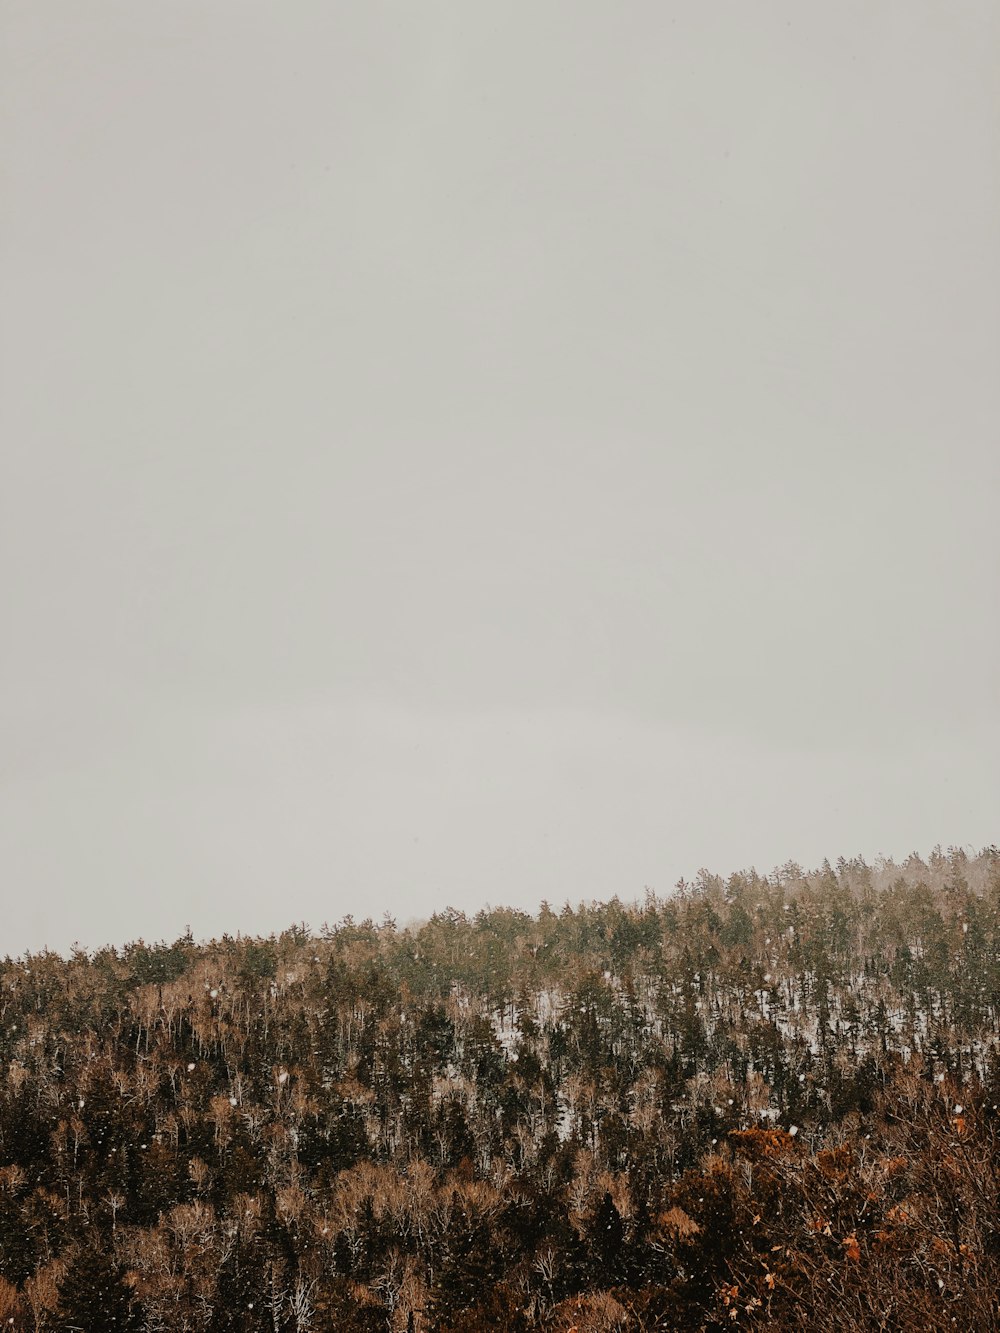 Un grupo de árboles en una colina cubierta de nieve